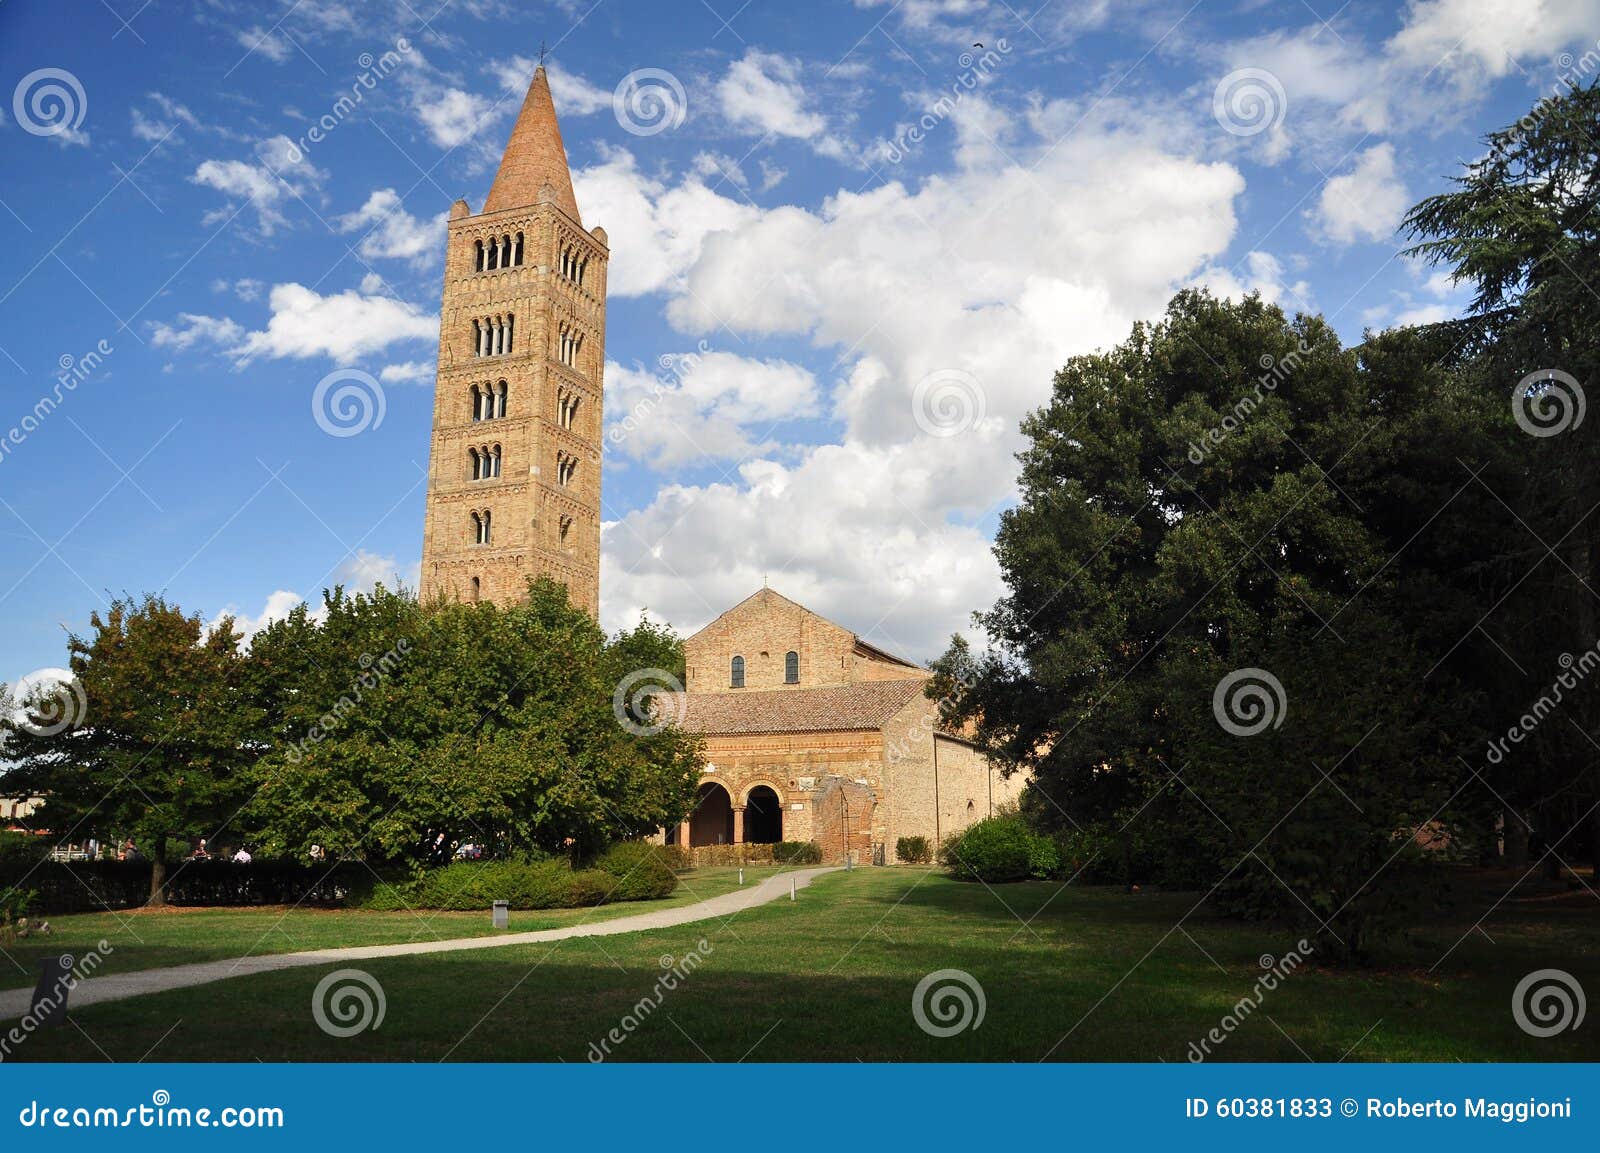 pomposa abbey - benedictine monastery, italy